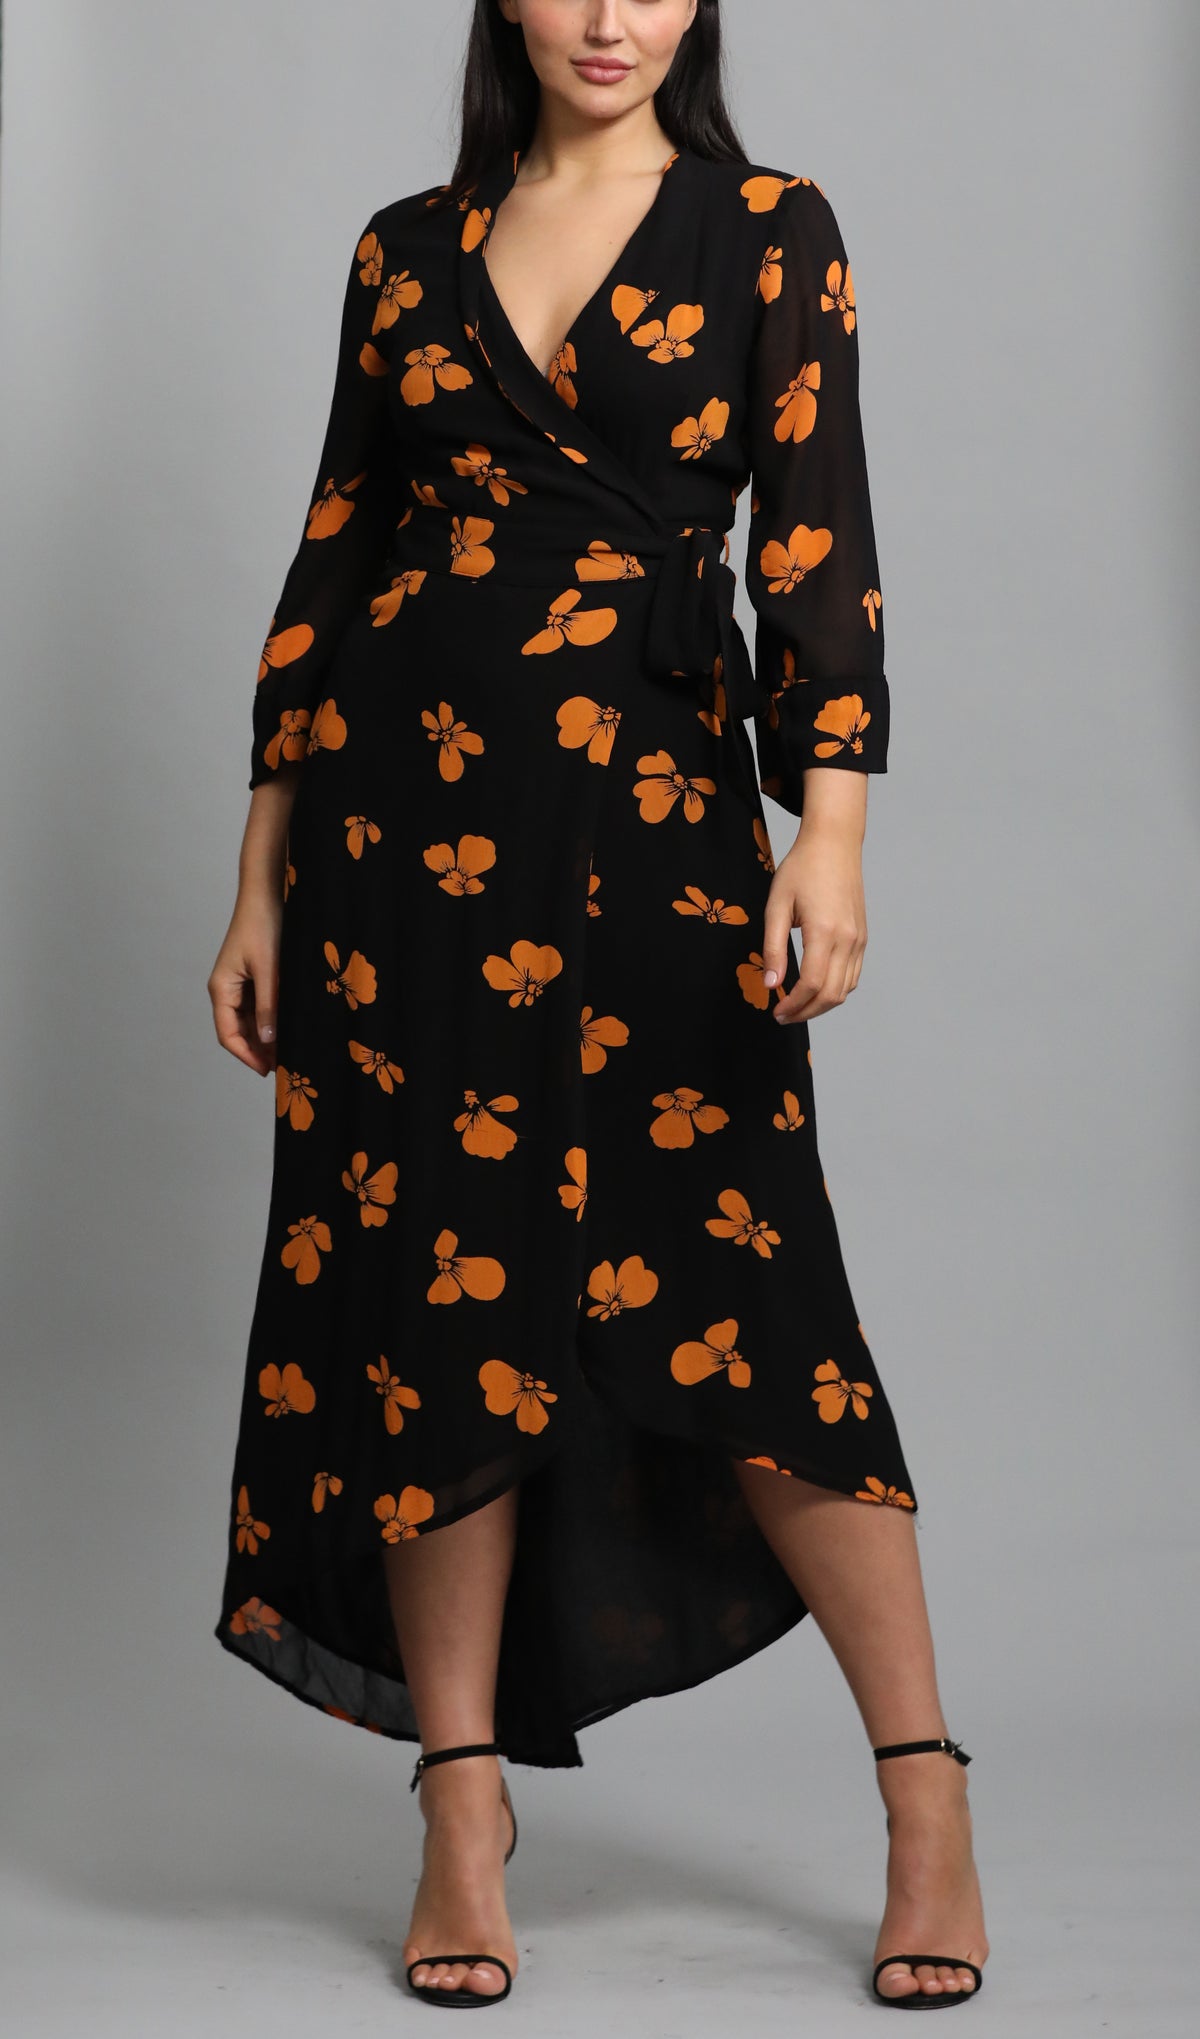 Floral Printed Crepe Wrap Dress in black / orange